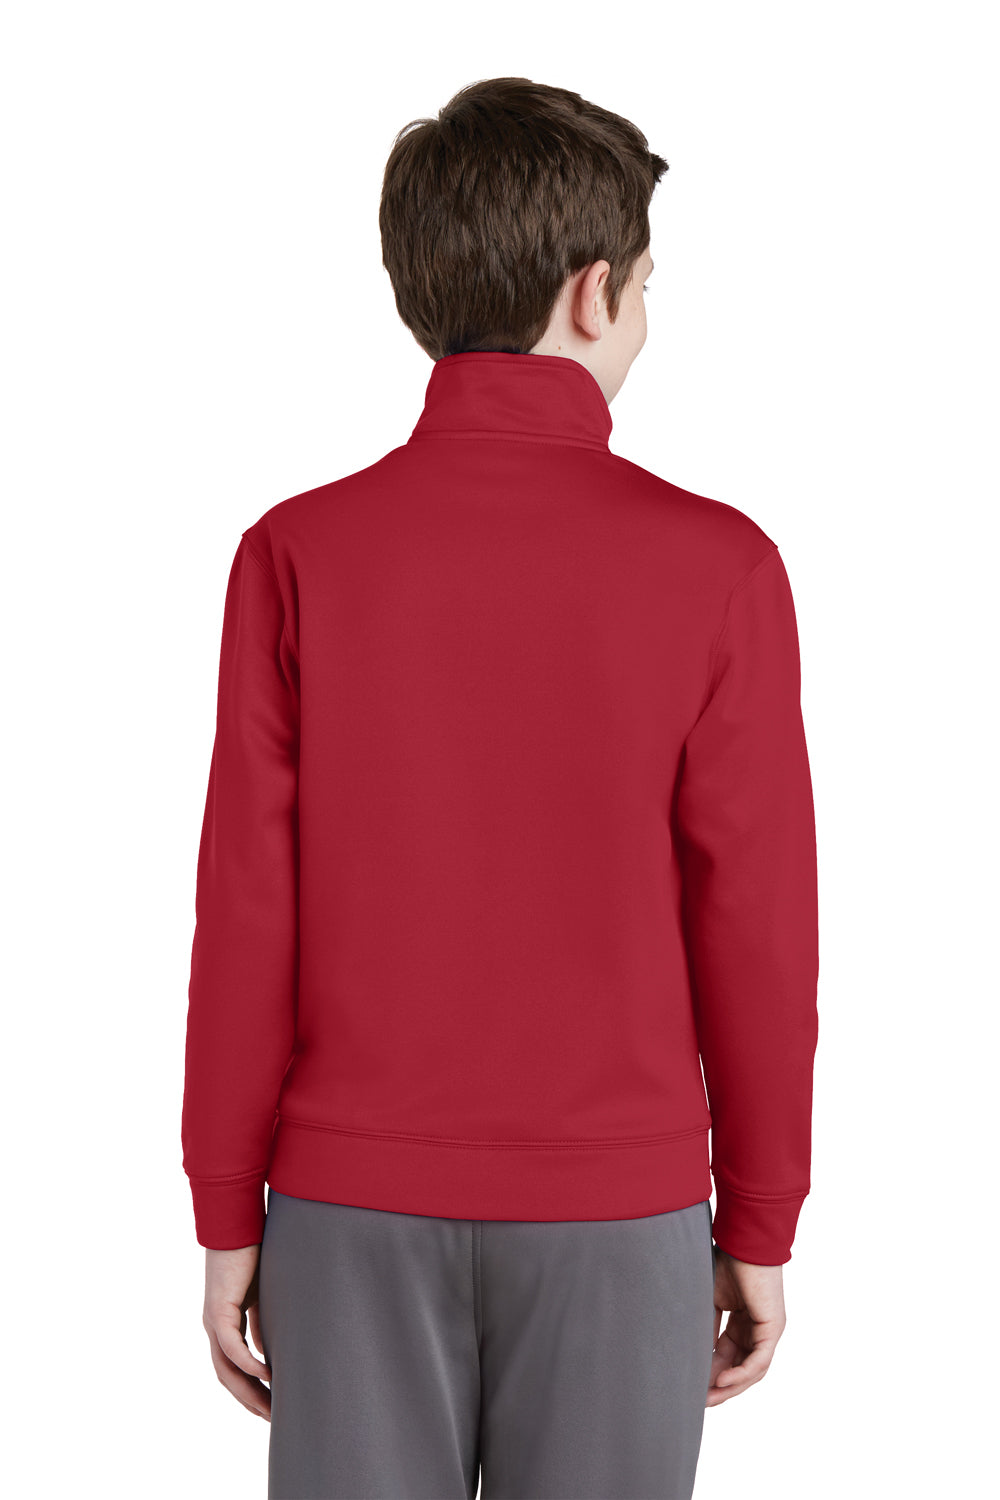 Sport-Tek YST241 Youth Sport-Wick Moisture Wicking Fleece Full Zip Sweatshirt Red Back